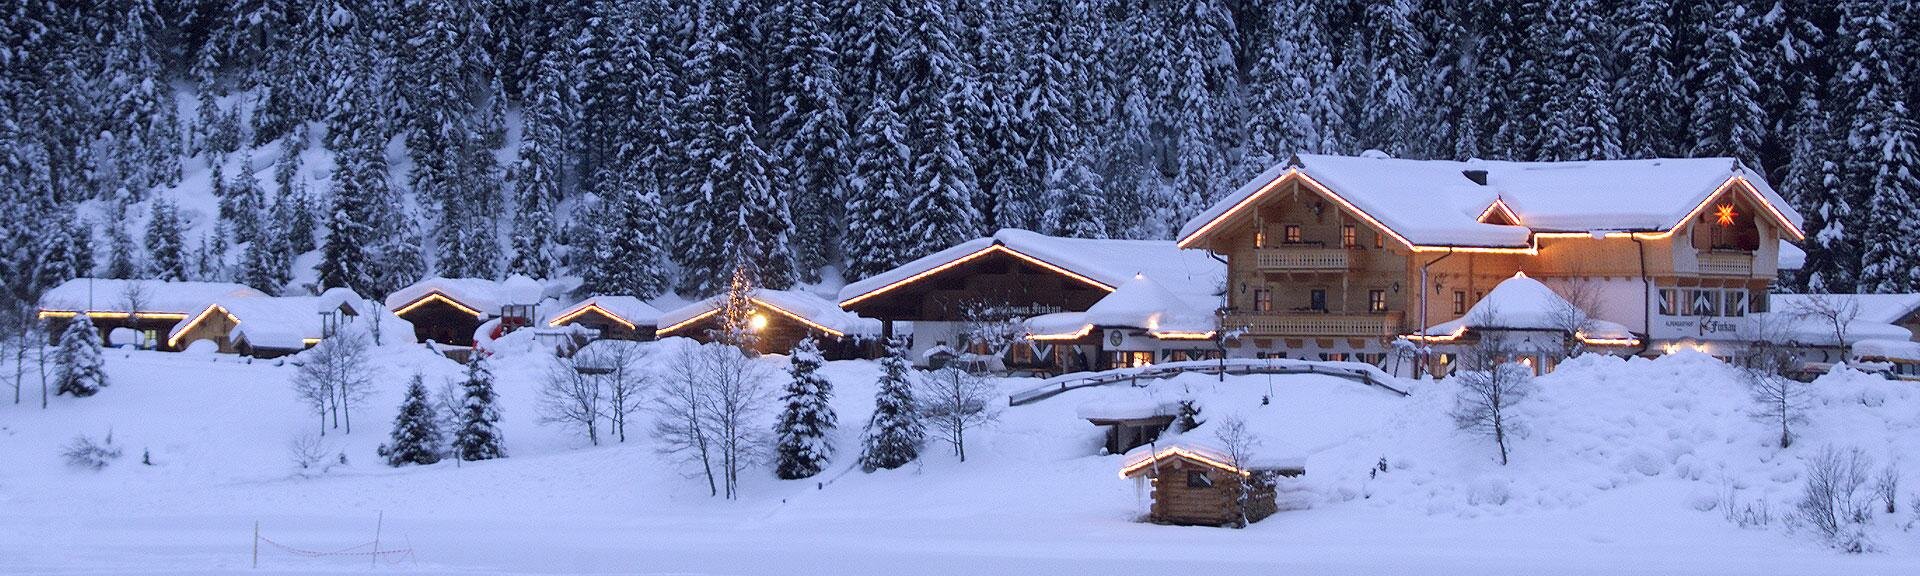 Alpengasthof-Finkau-Winter.jpg